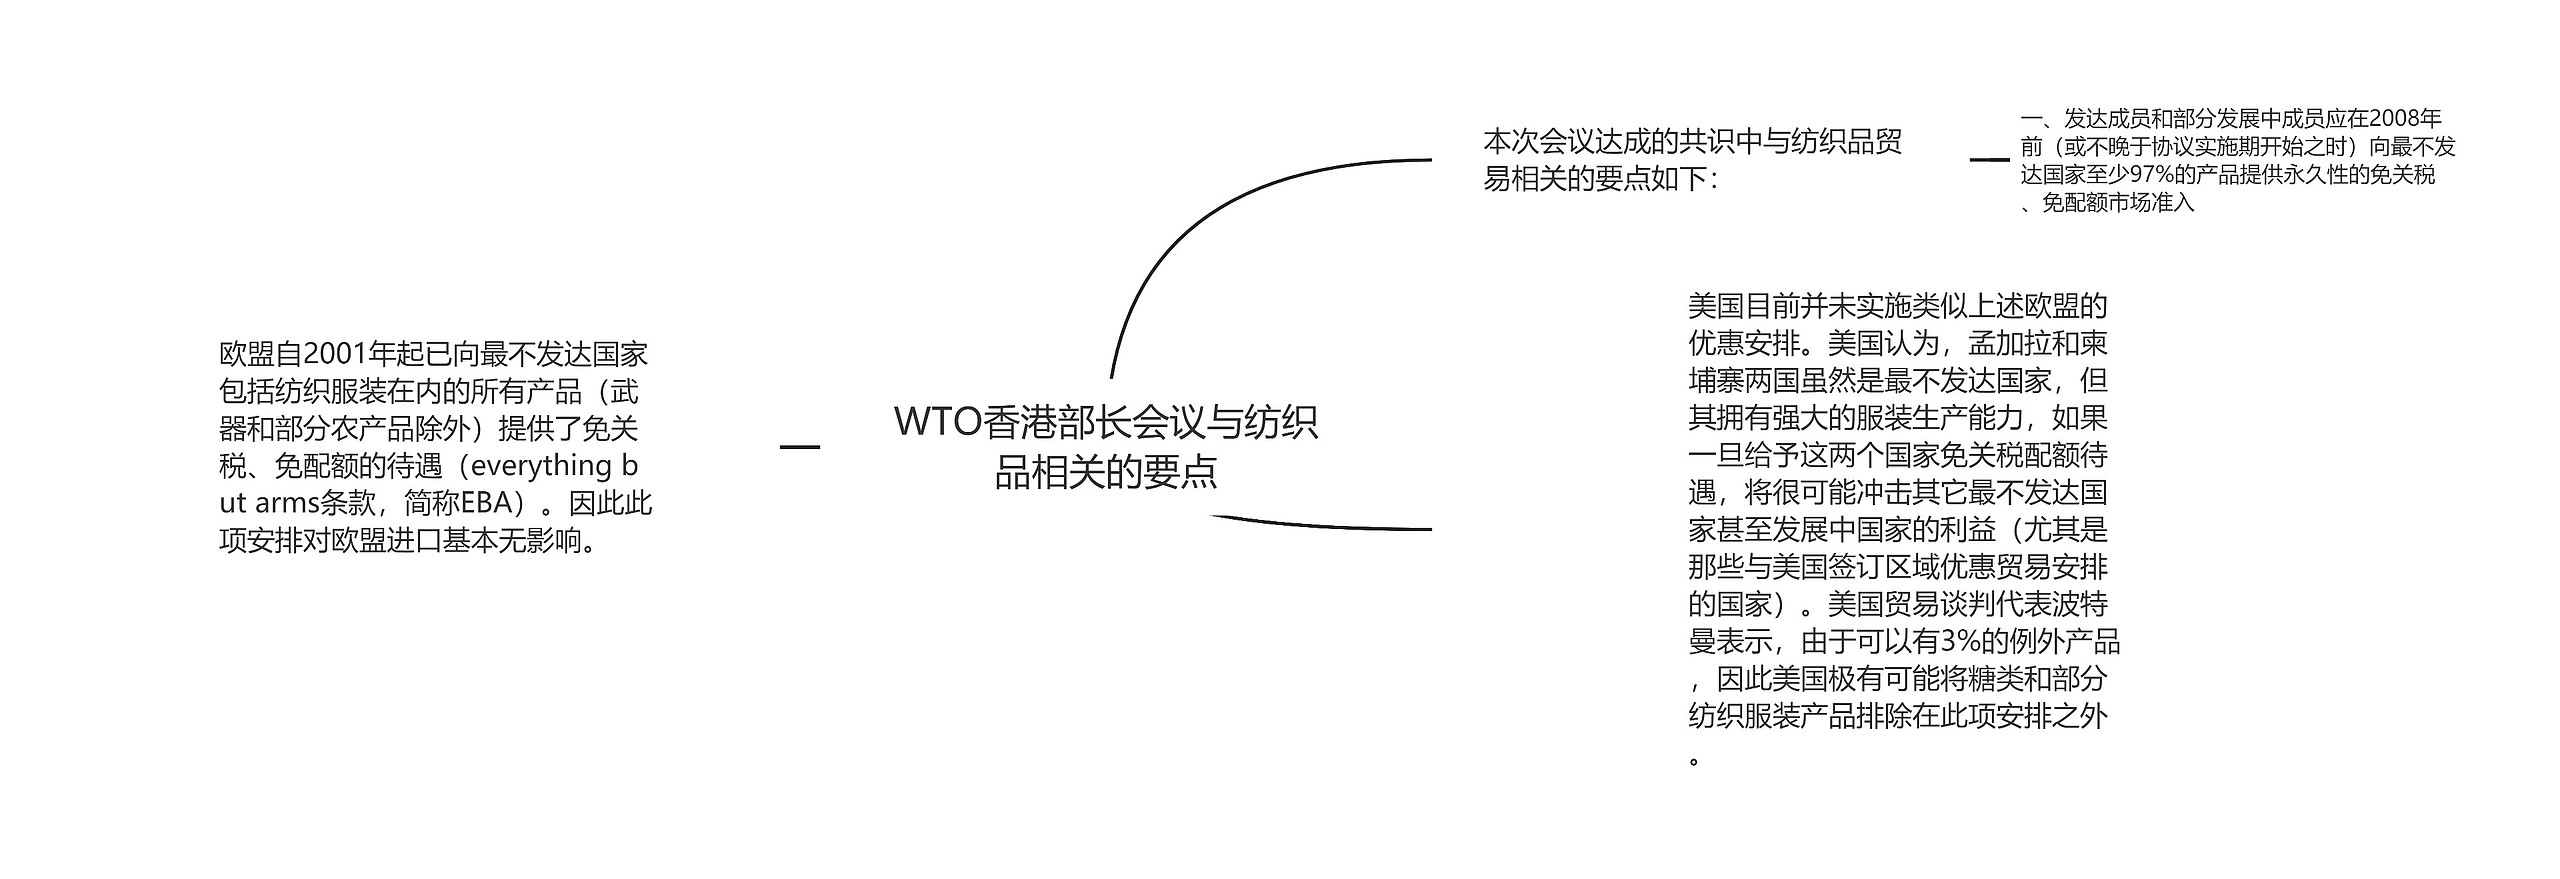 WTO香港部长会议与纺织品相关的要点